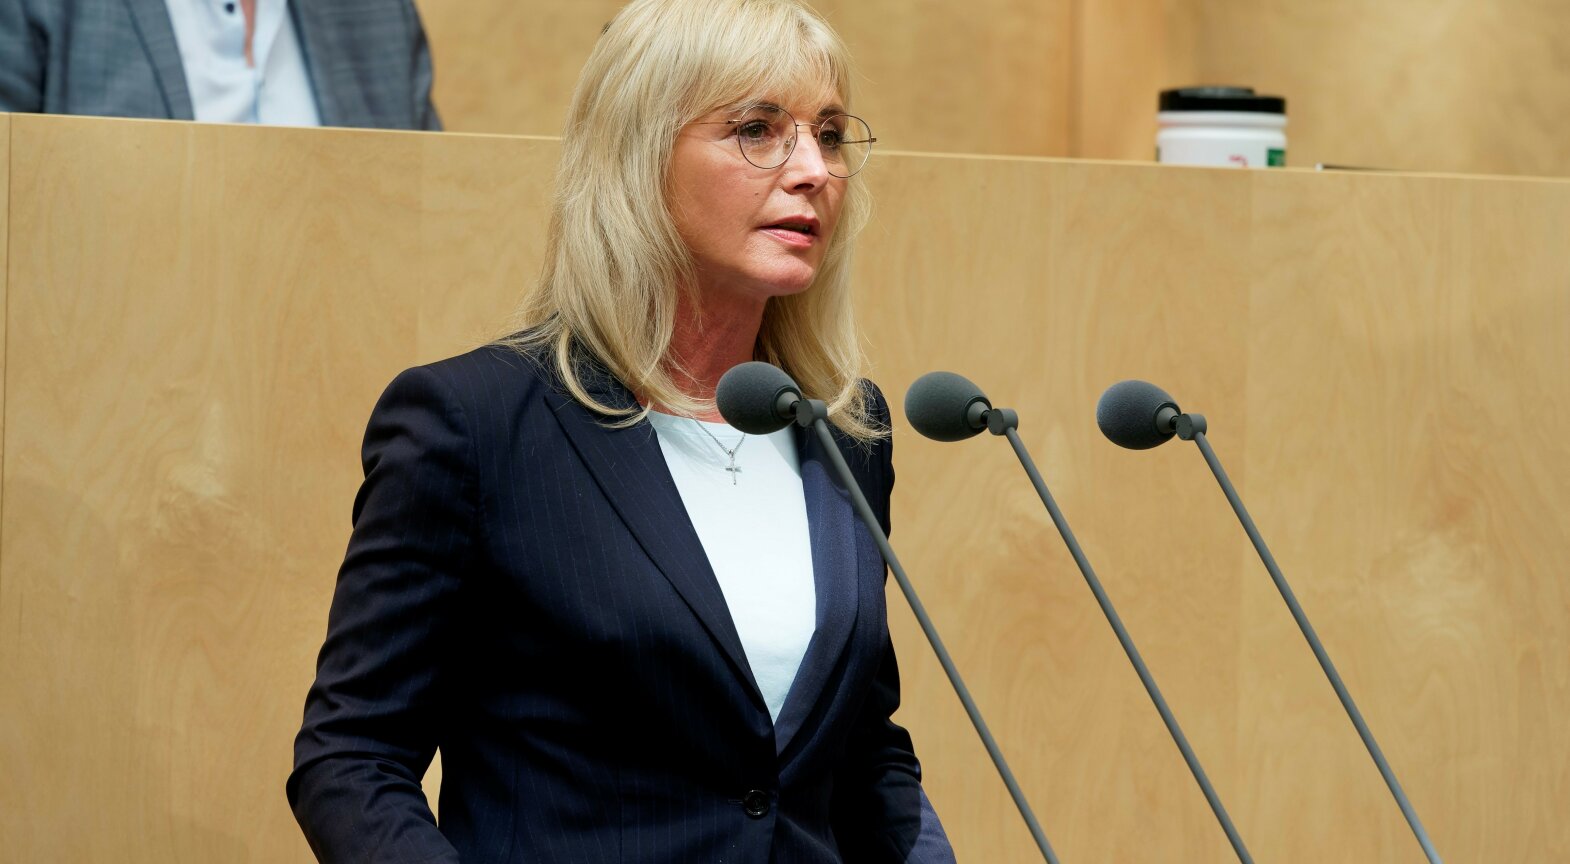 Arbeitsministerin Scharf bei ihrer Rede im Bundesrat